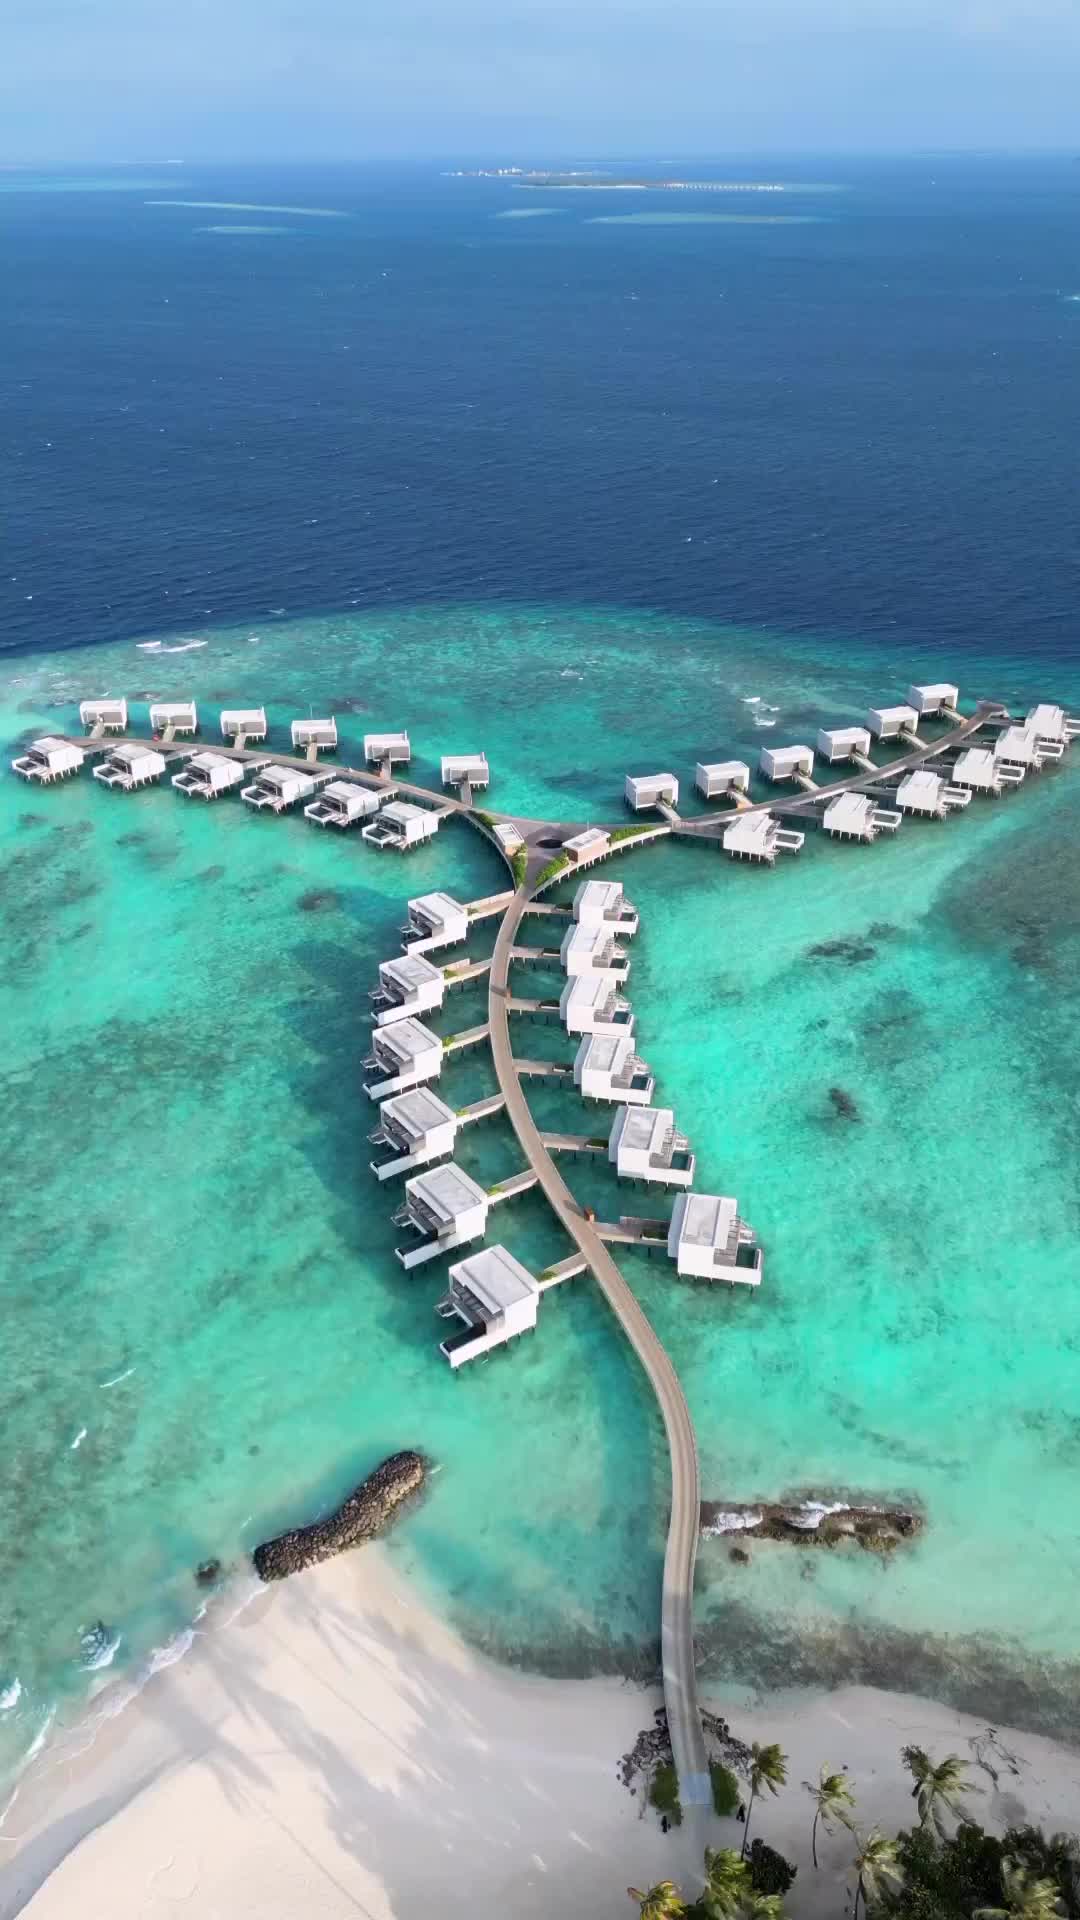 Luxury Getaway at Alila Maldives - A Paradise Awaits